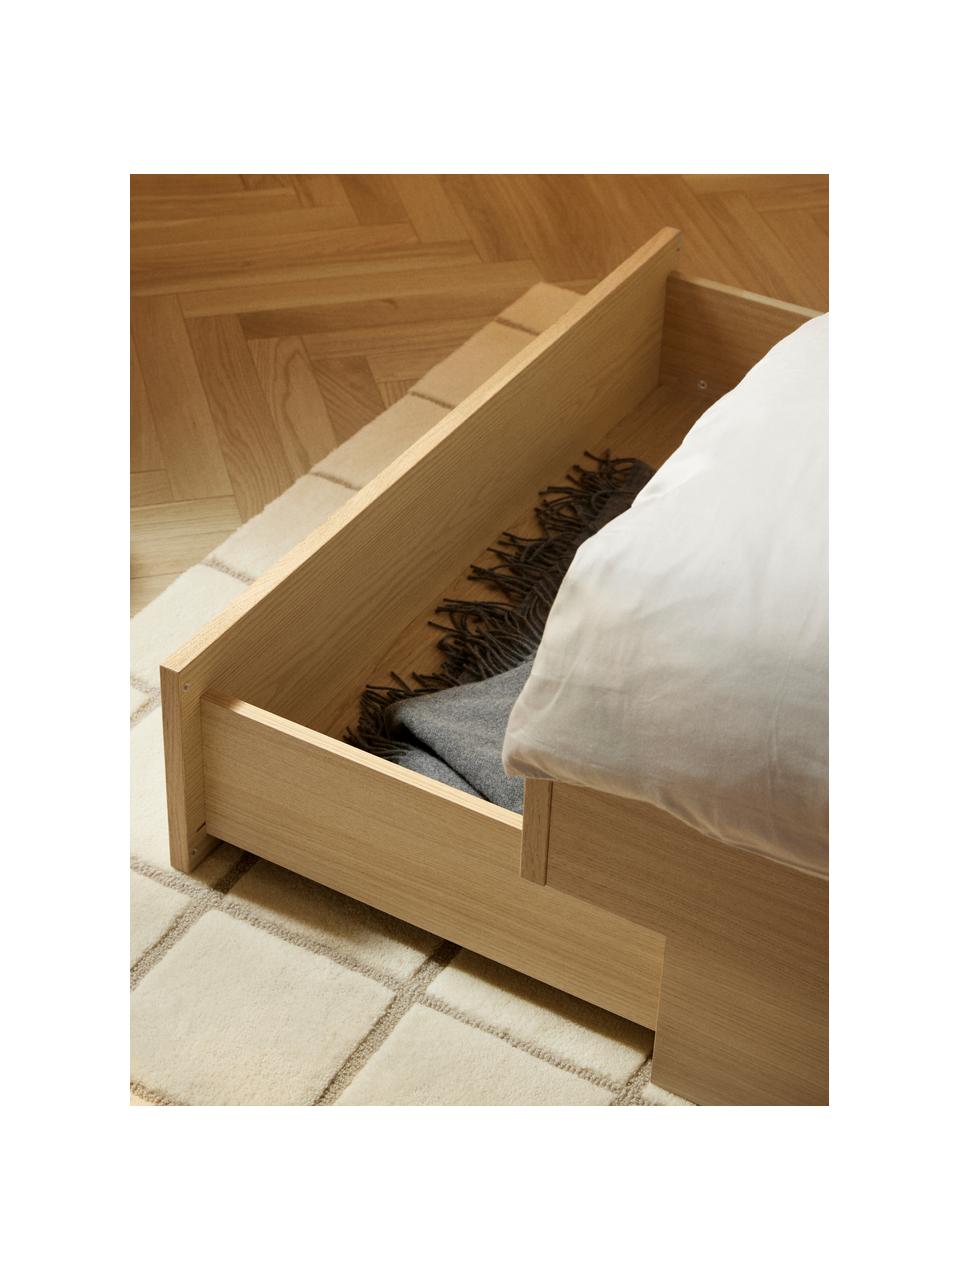 Łóżko z drewna z miejscem do przechowywania Sato, Stelaż: płyta wiórowa z fornirem , Nogi: metal, tworzywo sztuczne , Drewno dębowe, S 140 x D 200 cm